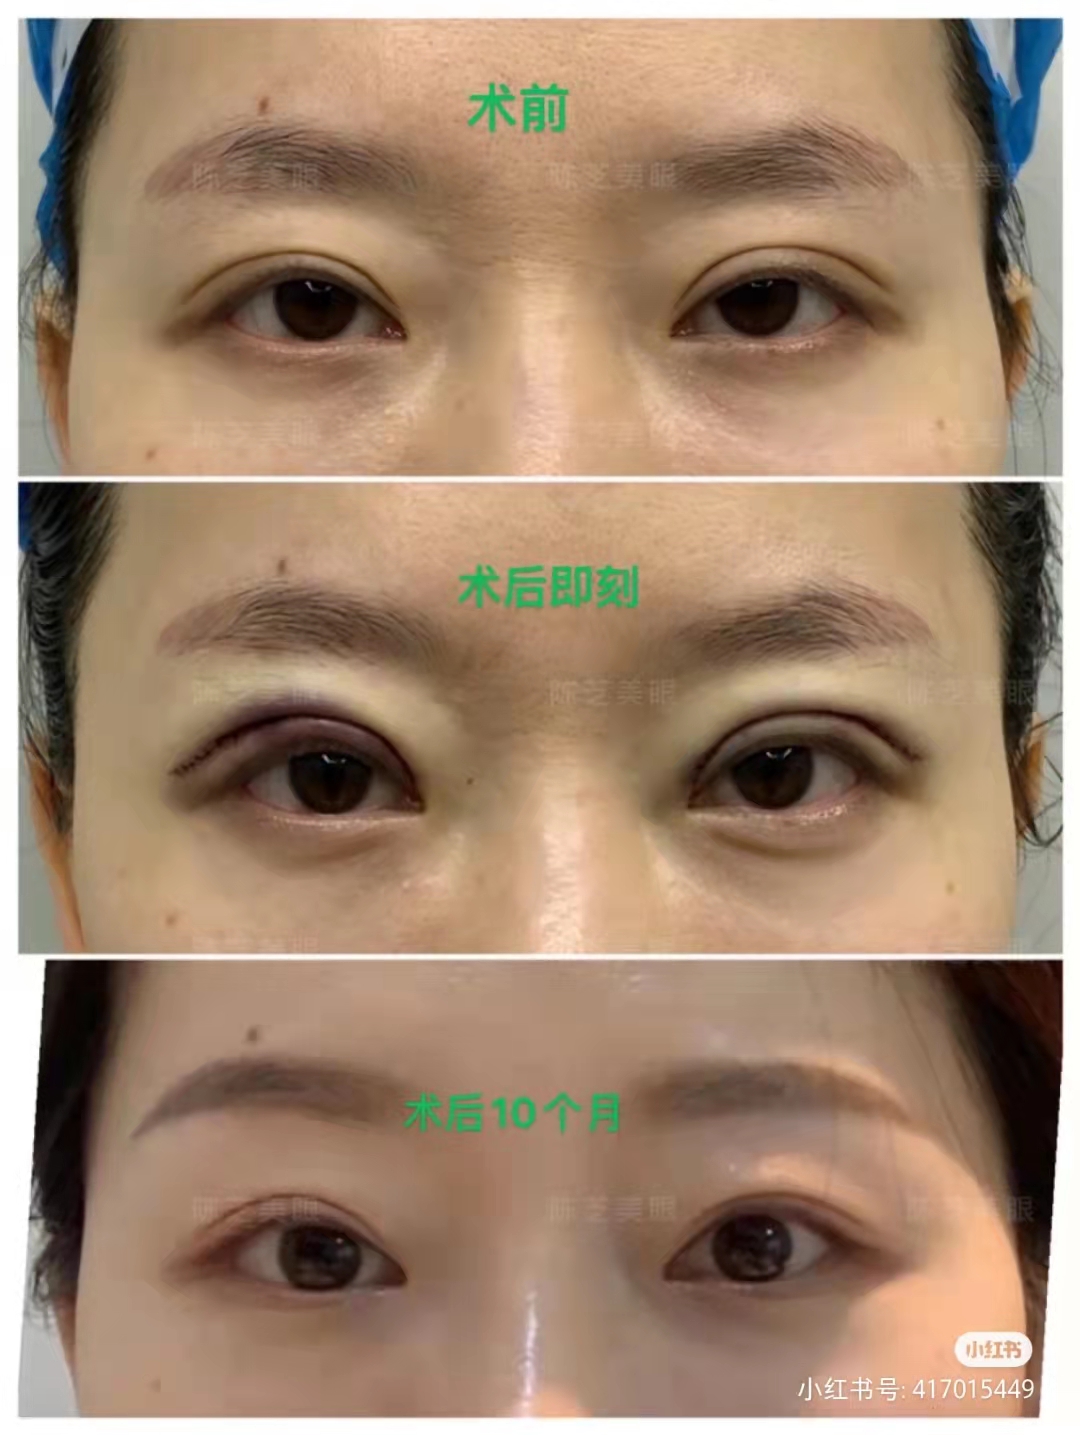 陳芝雙眼皮修復案例